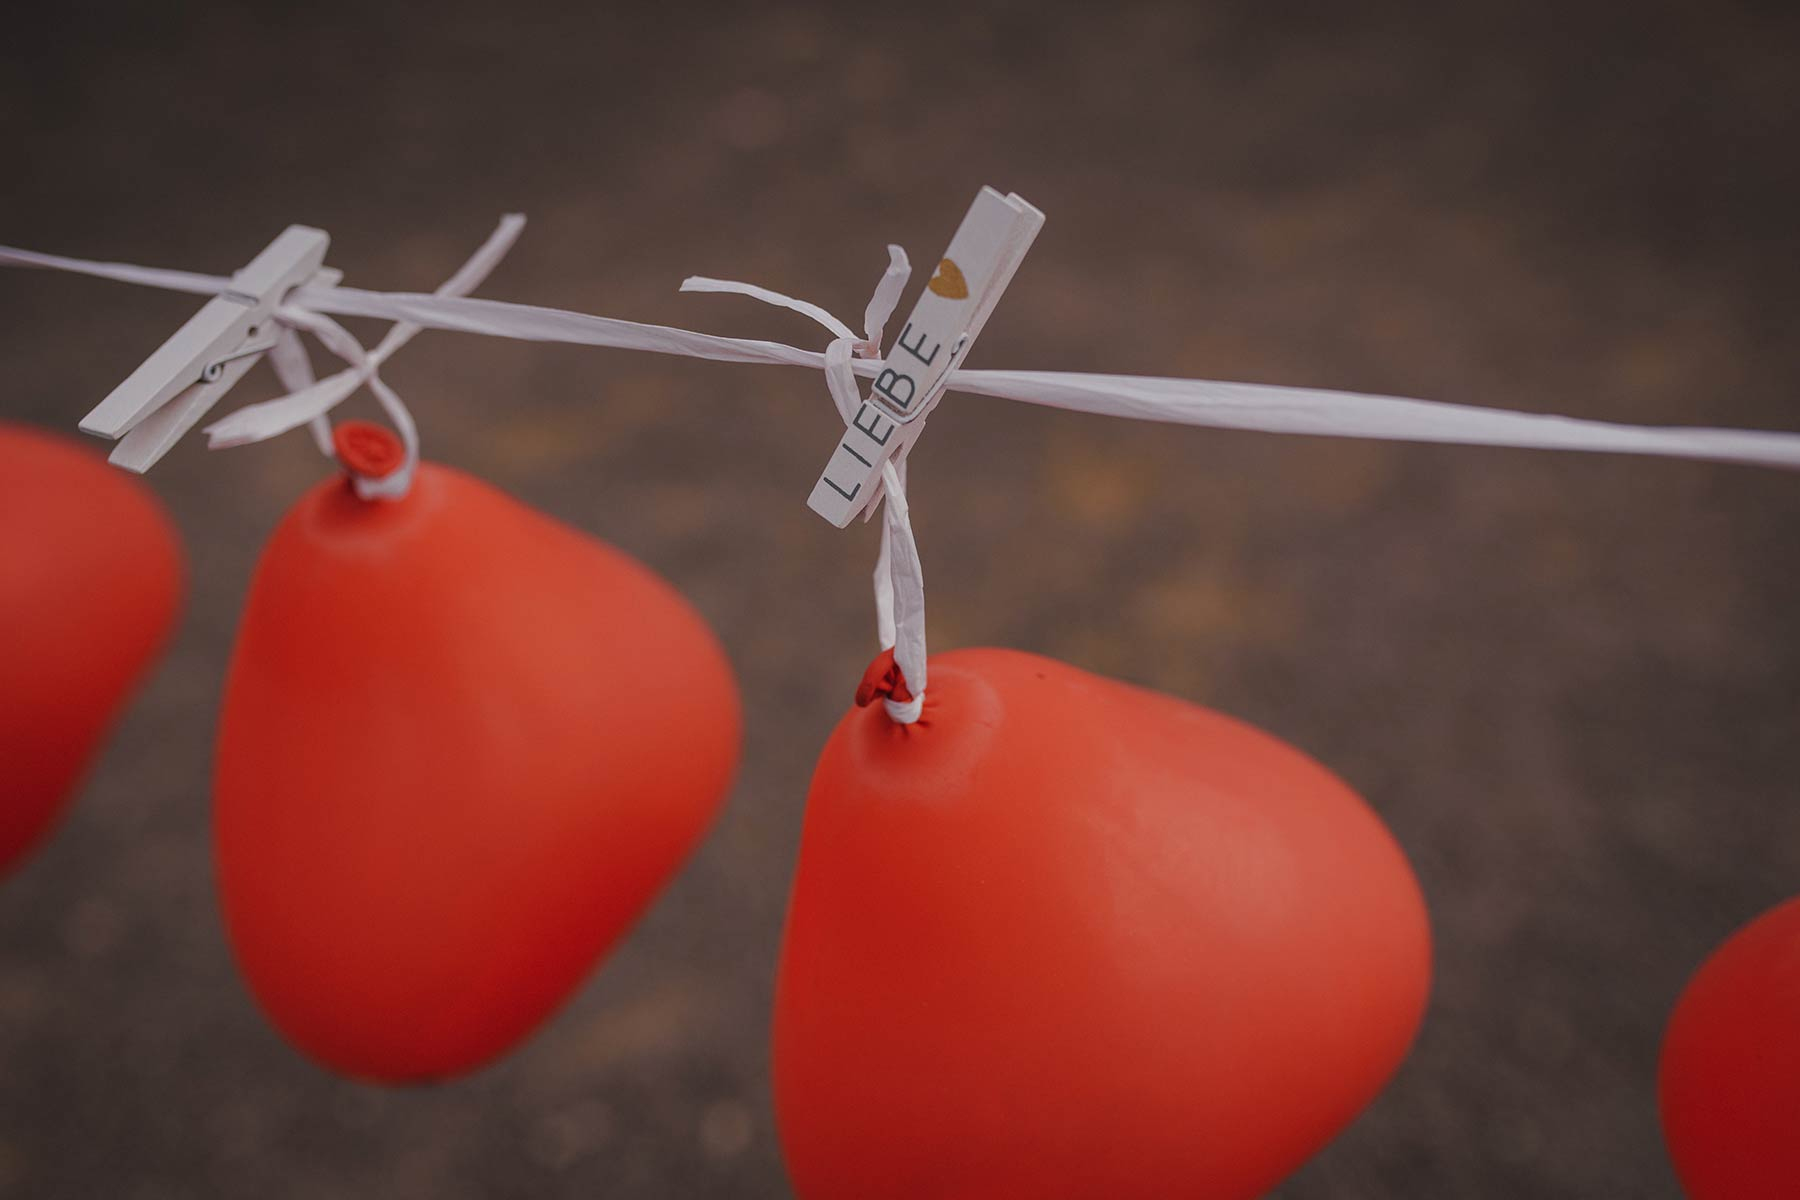 Ballonstechen Als Hochzeitsspiel Für Braut Und Bräutigam bei Hochzeitsspiel Luftballons Zerstechen